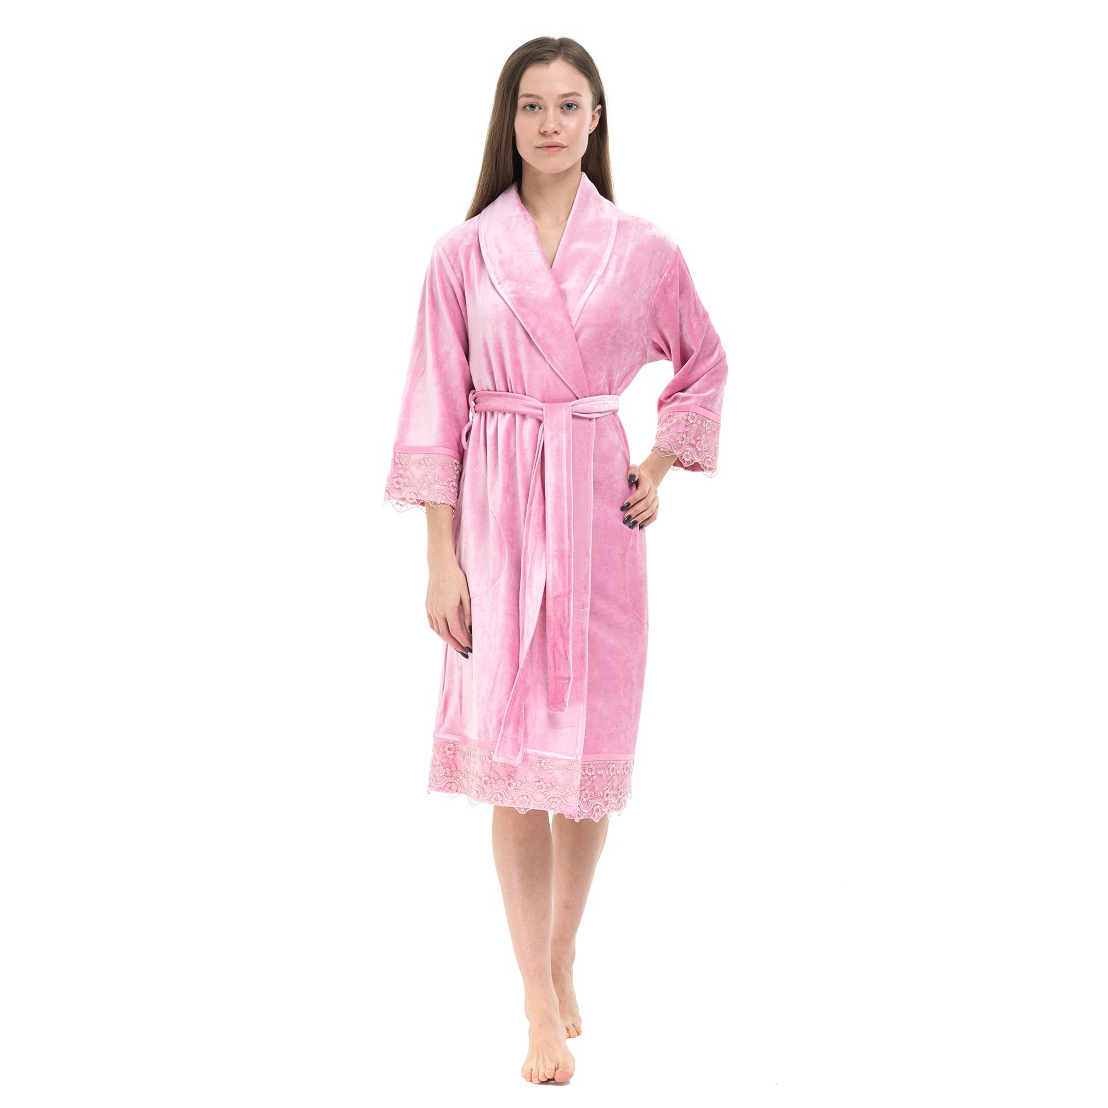 Банный халат Bettina цвет: розовый (S)